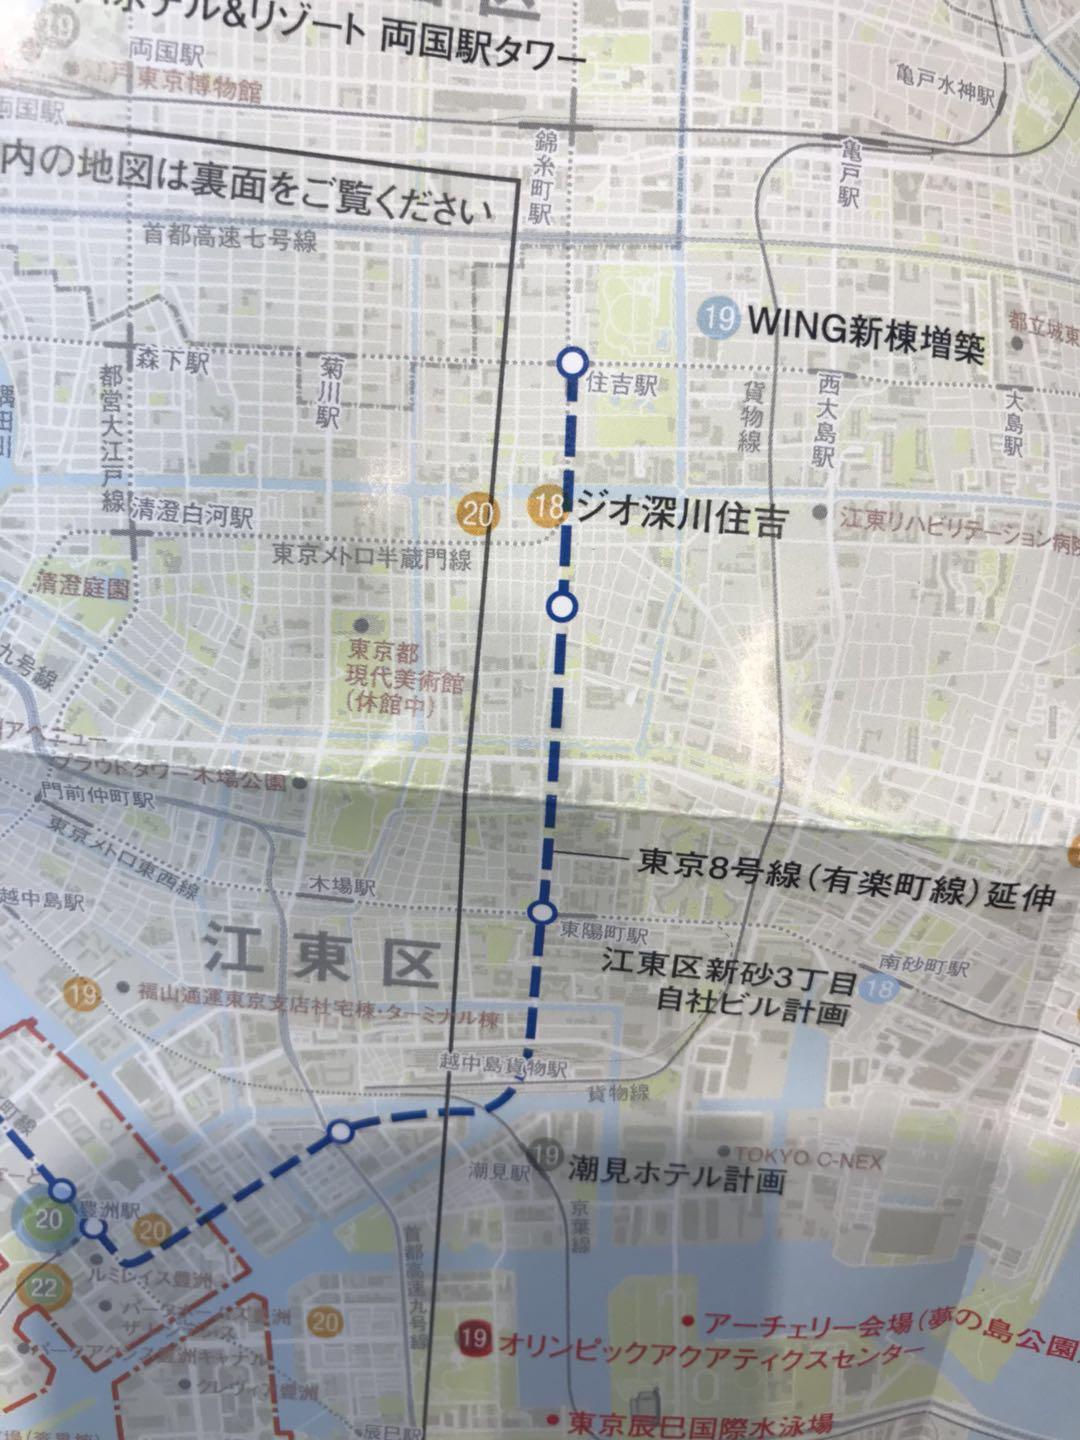 東京の改造マップを見ましたので、共有しま...